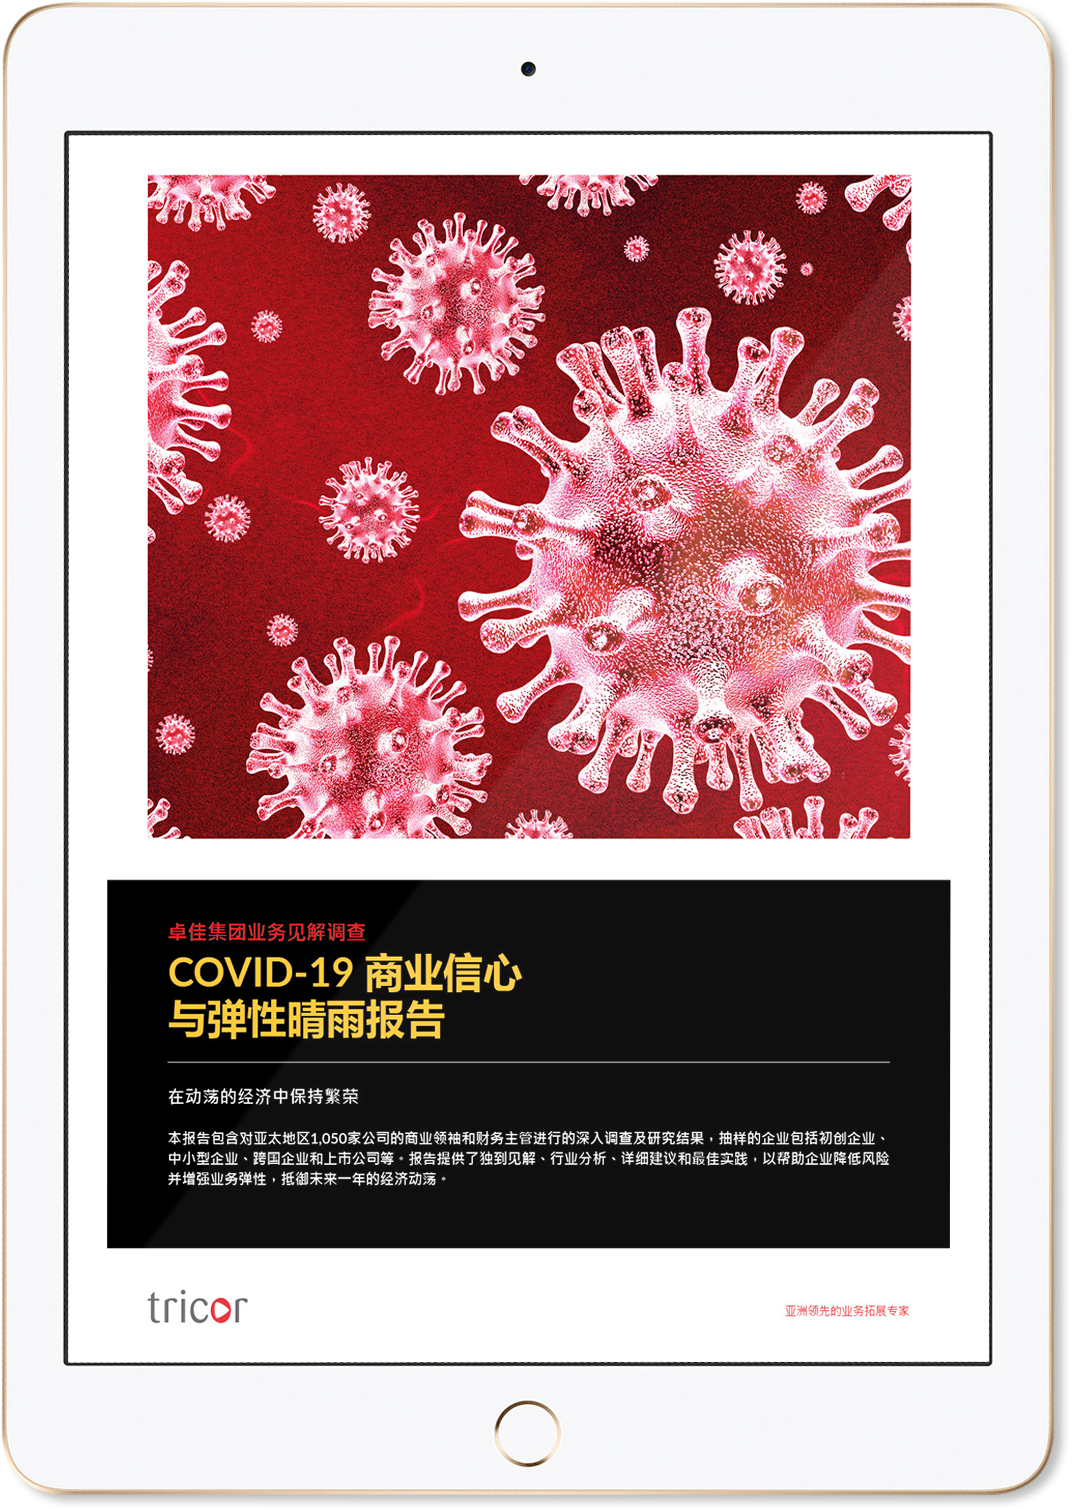 COVID-19商業信心與彈性晴雨報告